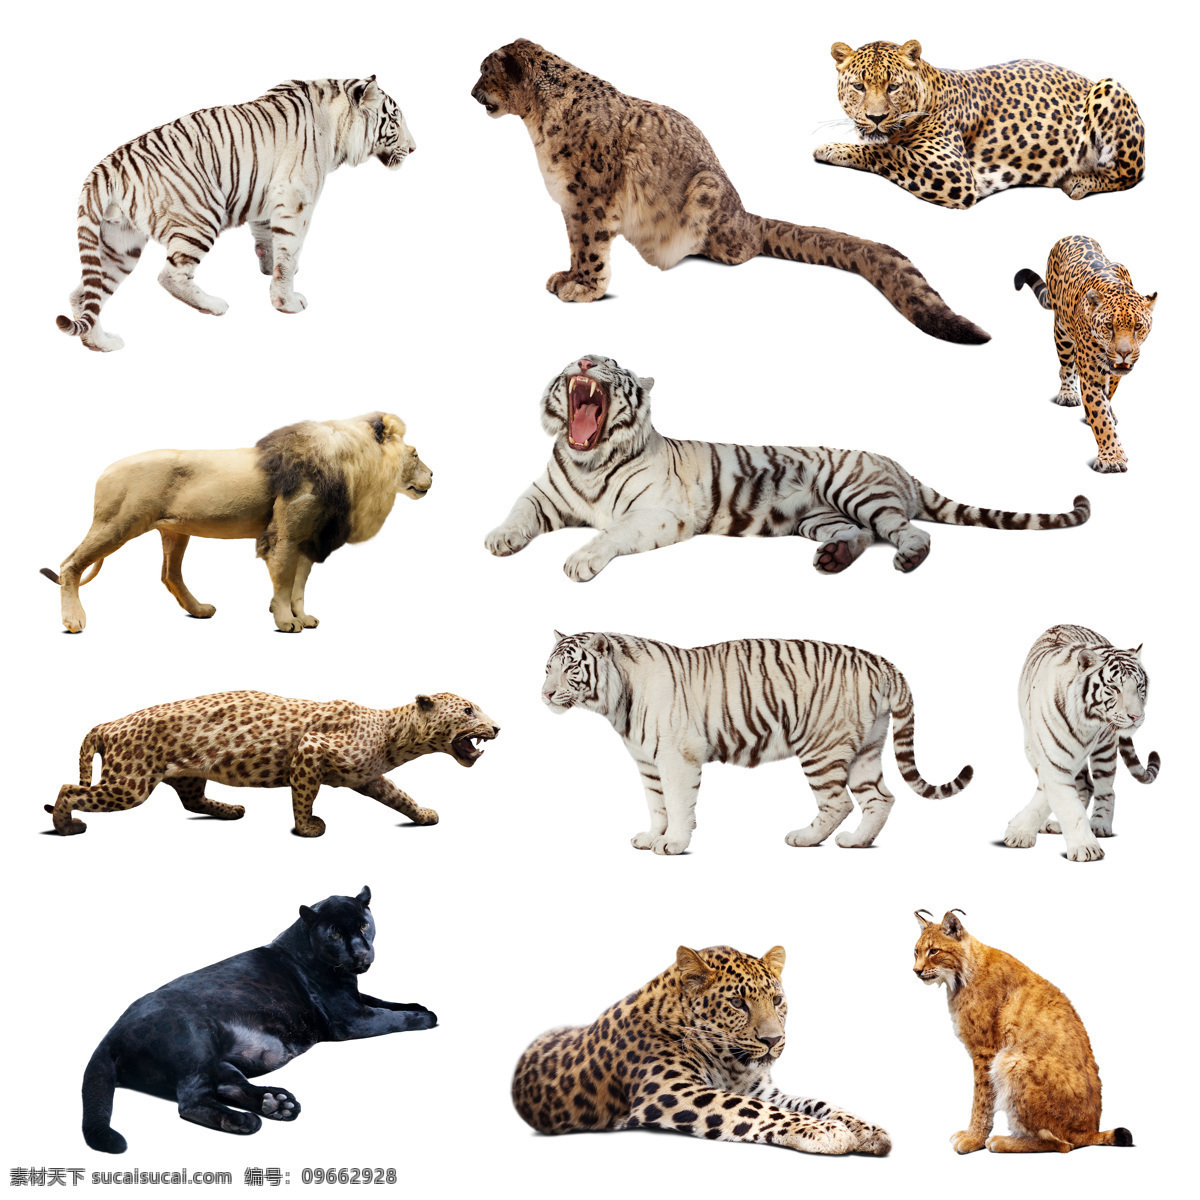 猫科 动物 猫科动物 美洲狮 老虎 猞猁 豹子 动物摄影 动物世界 猫咪图片 生物世界